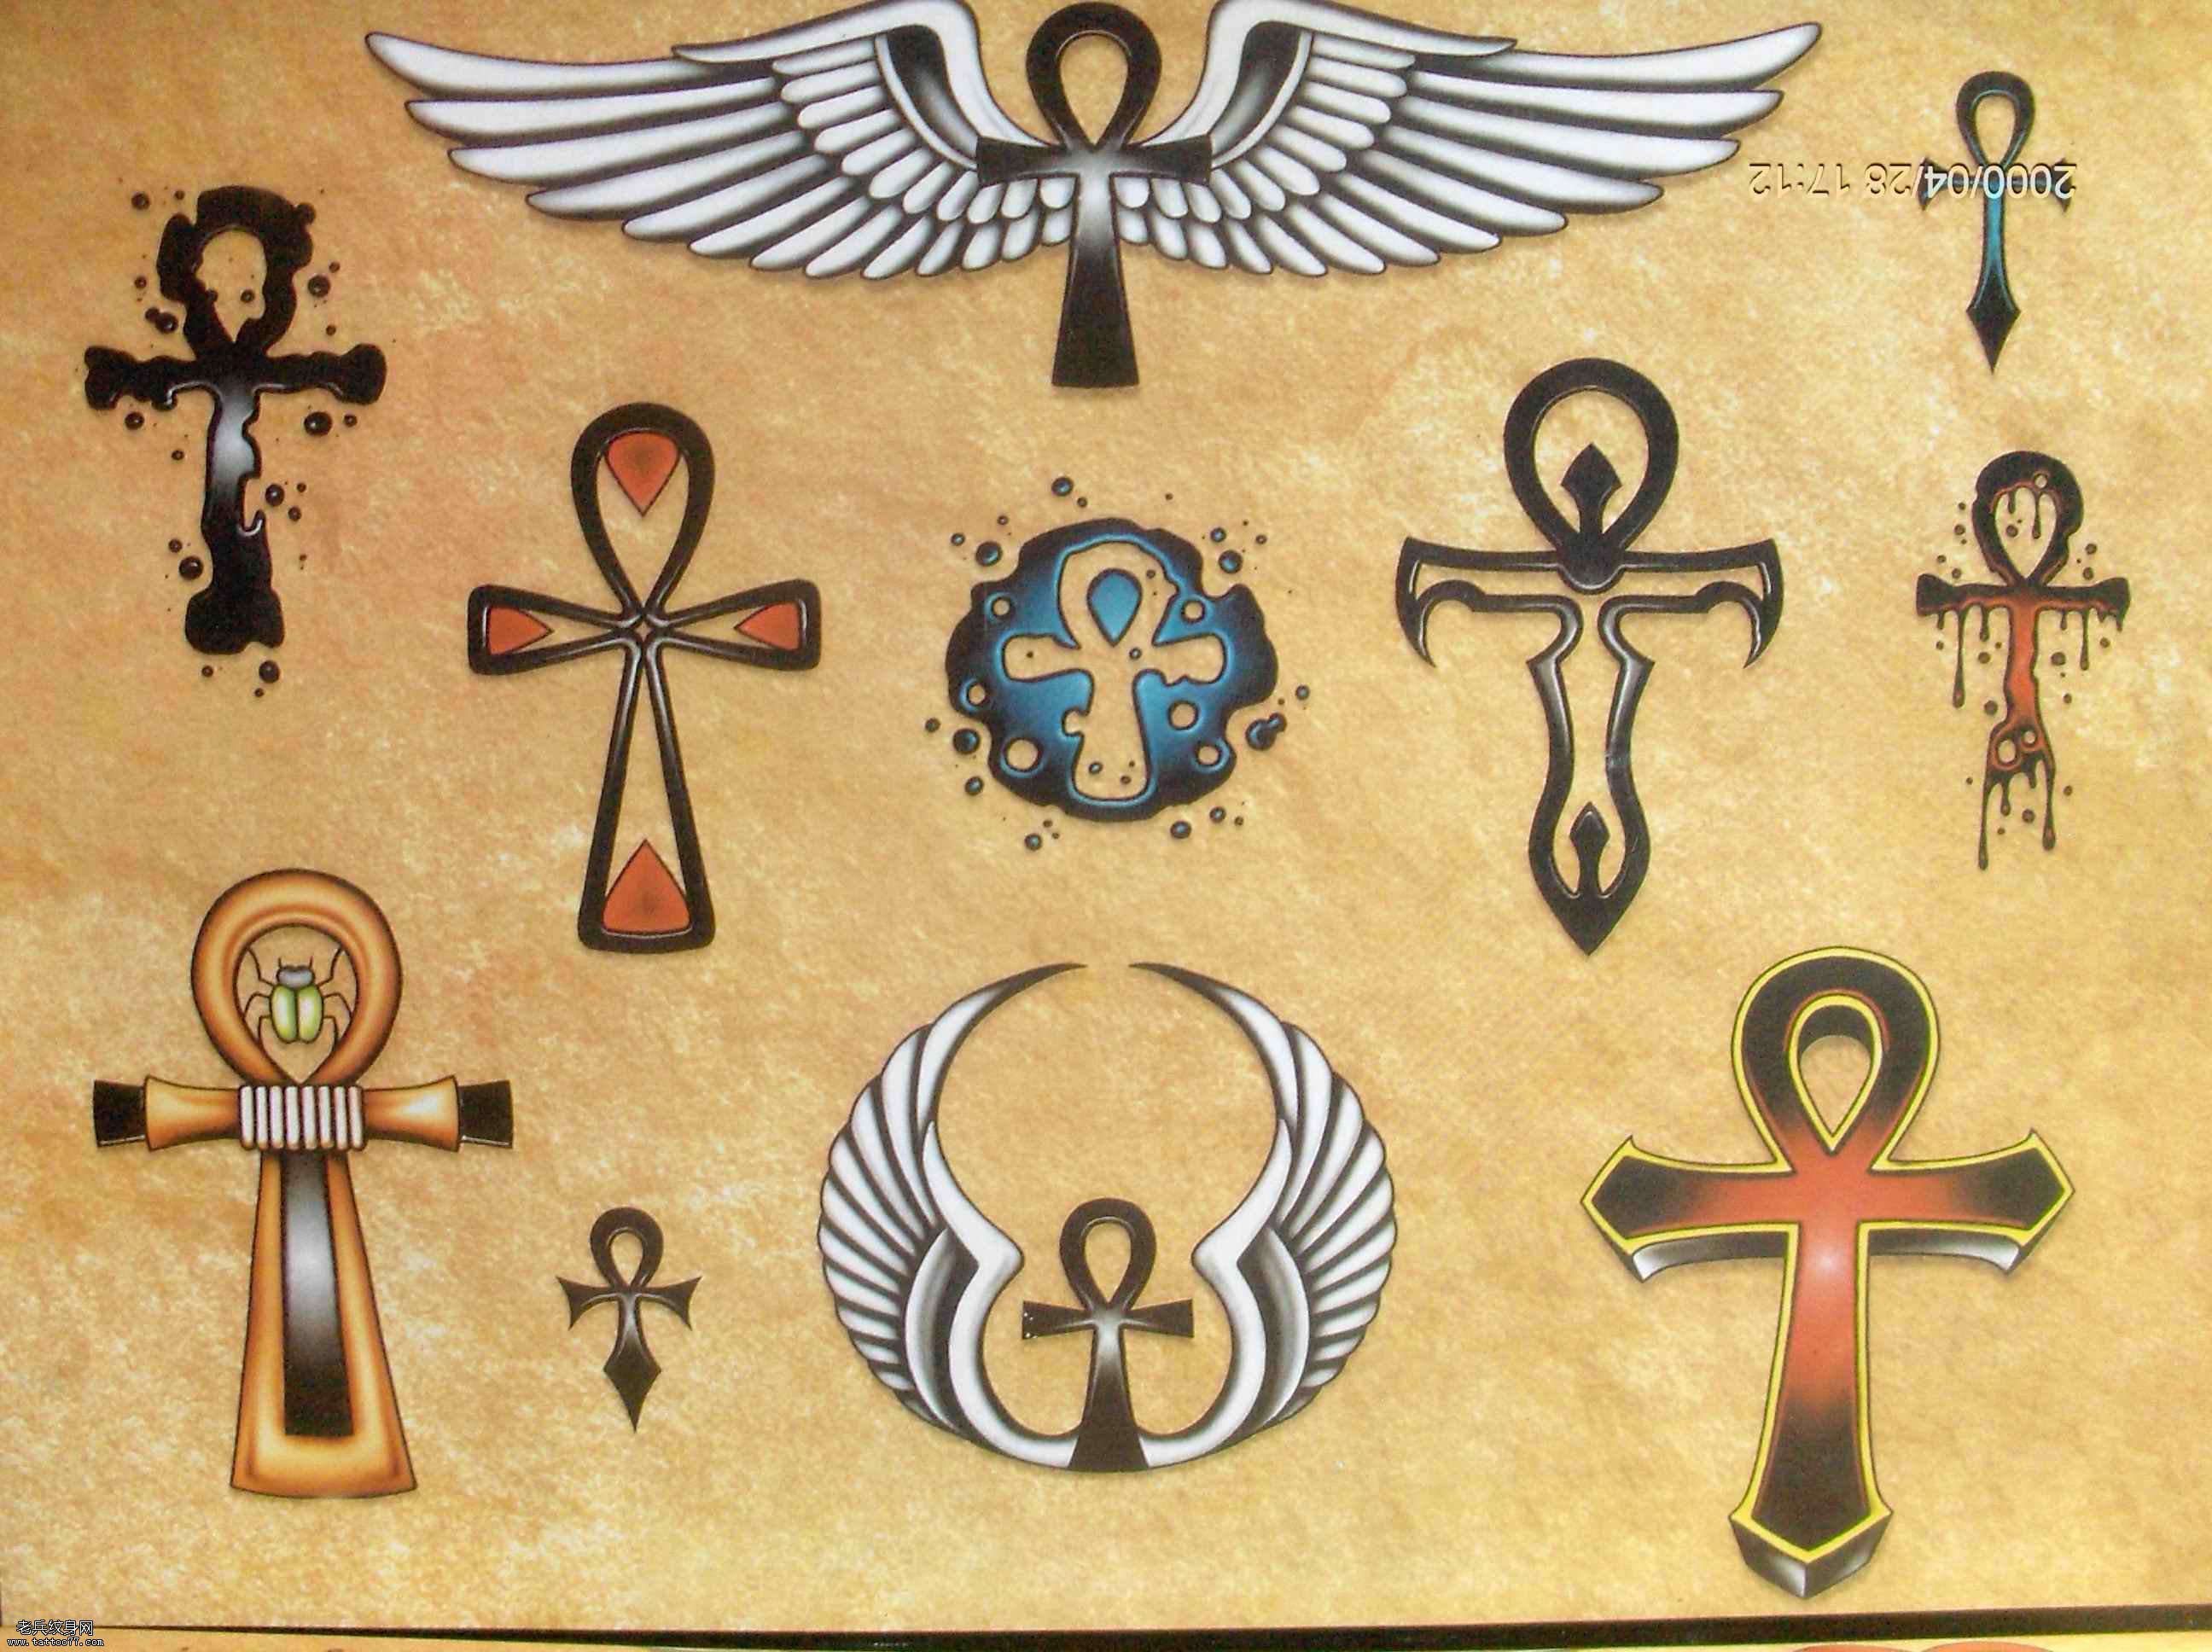 分享一款十字架翅膀纹身图案